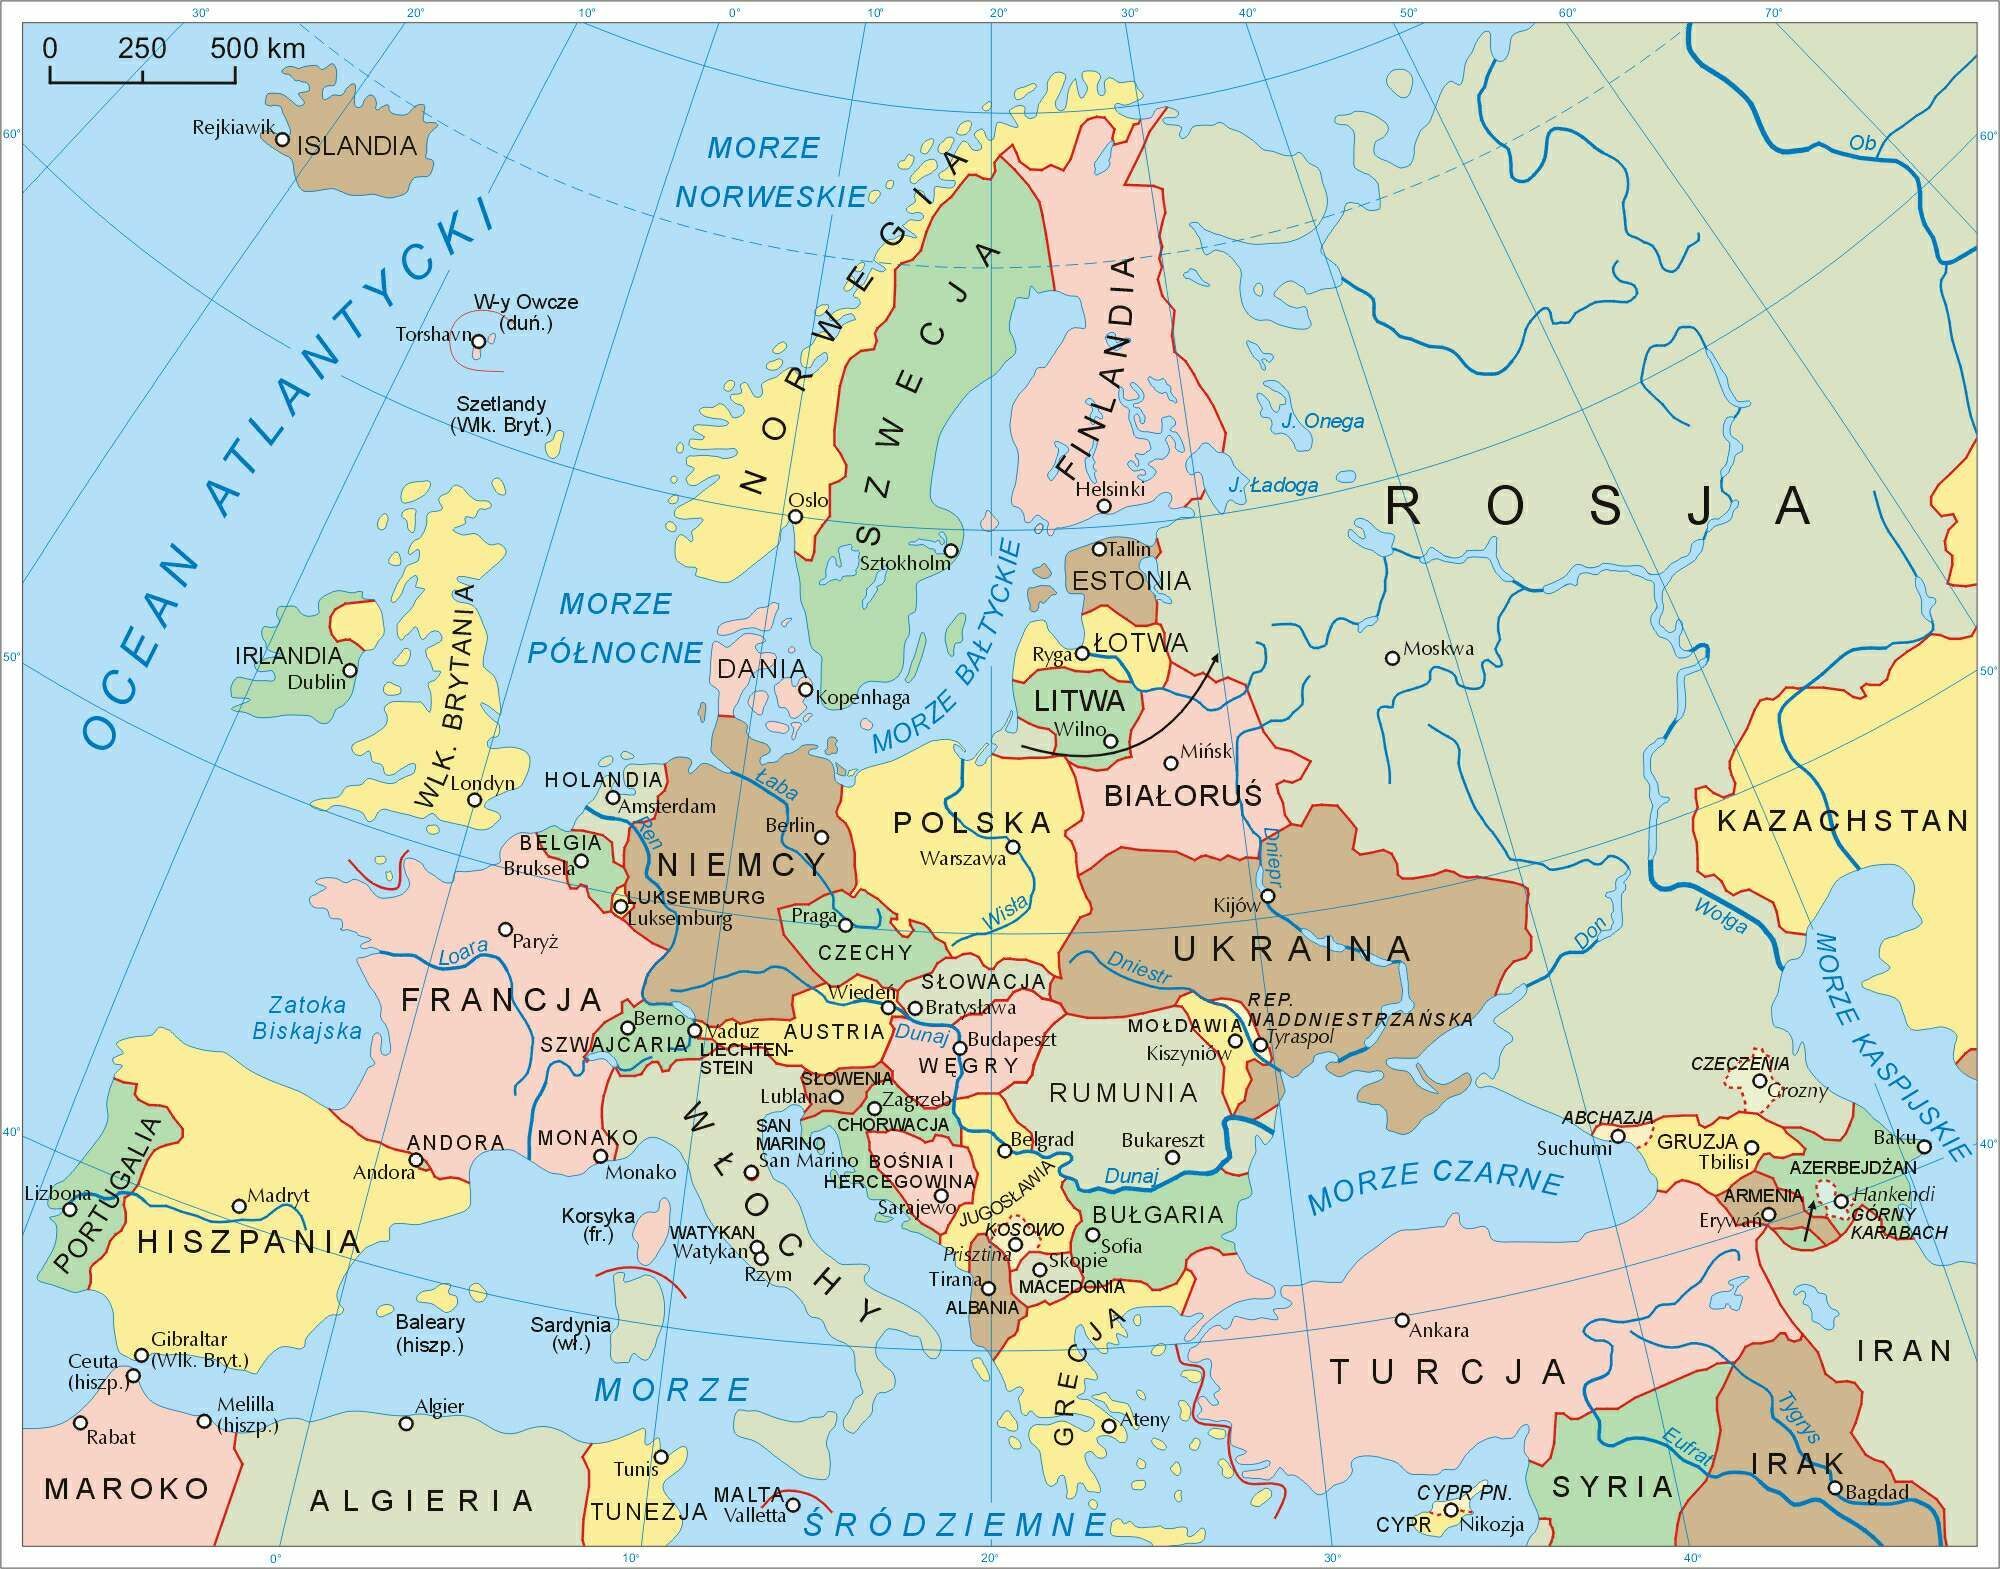 mapa-polityczna-europy-2k-plays-quizizz